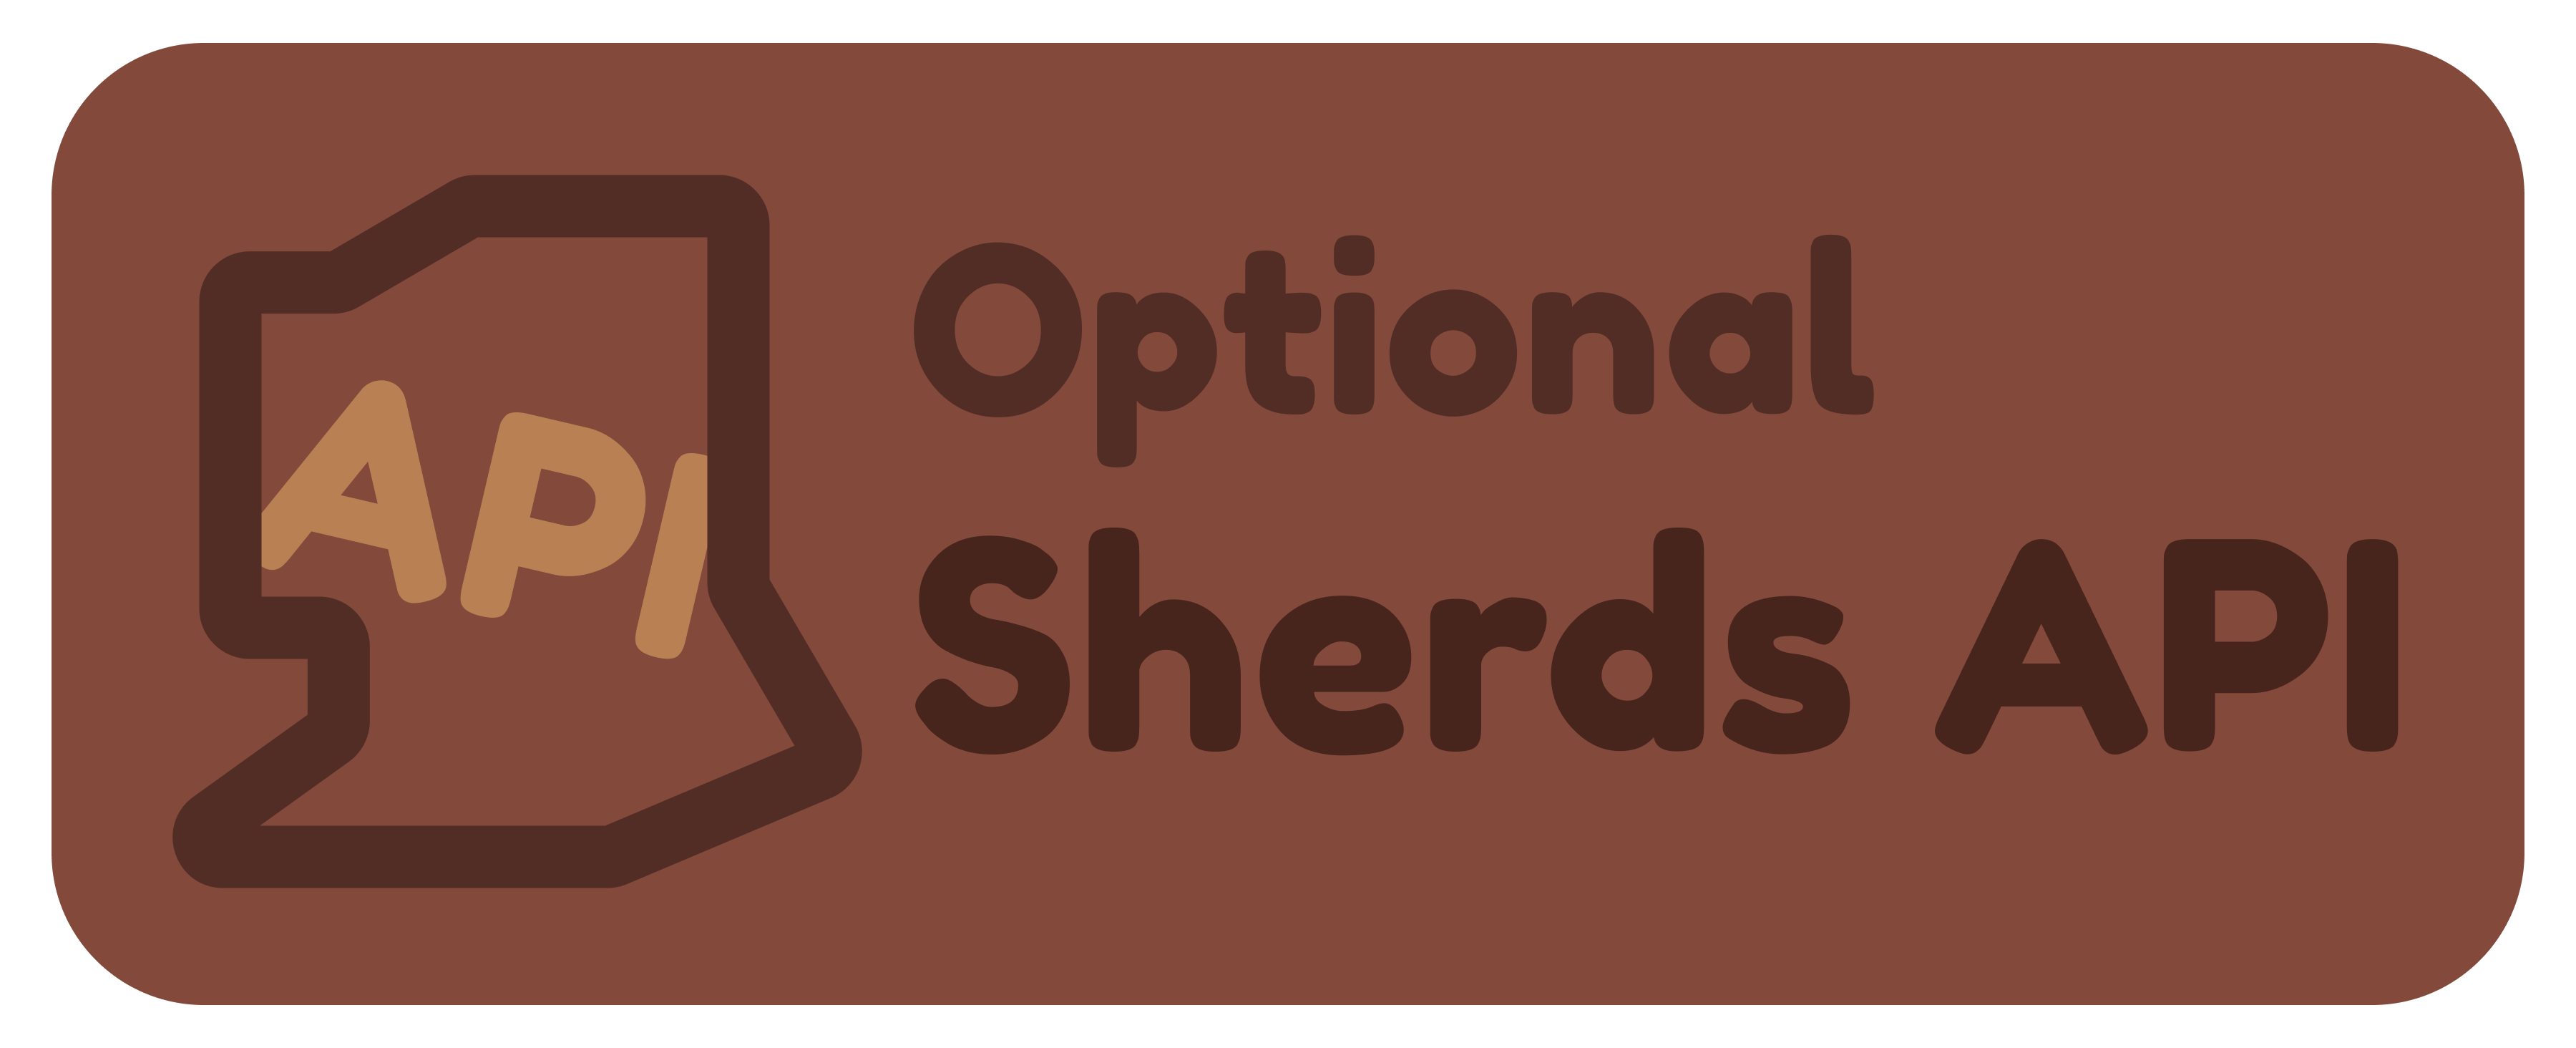 'Optional Sherds API' badge